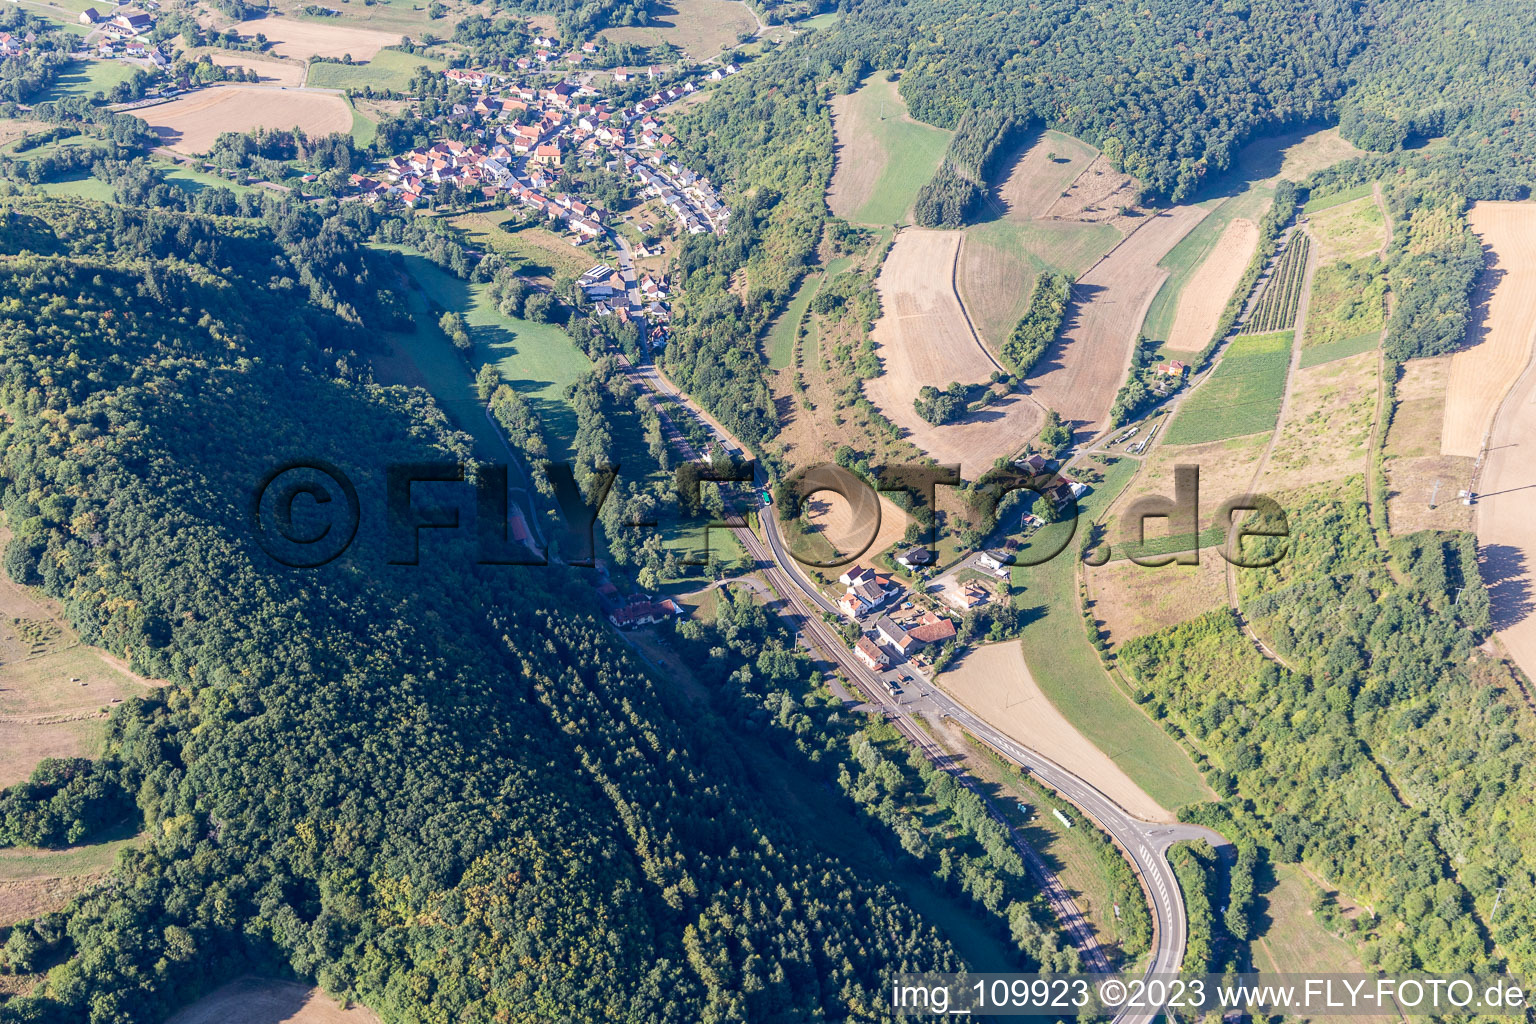 Vue aérienne de Domaine viticole Hahnmühle de P.&M. Linxweiler à Mannweiler-Cölln dans le département Rhénanie-Palatinat, Allemagne